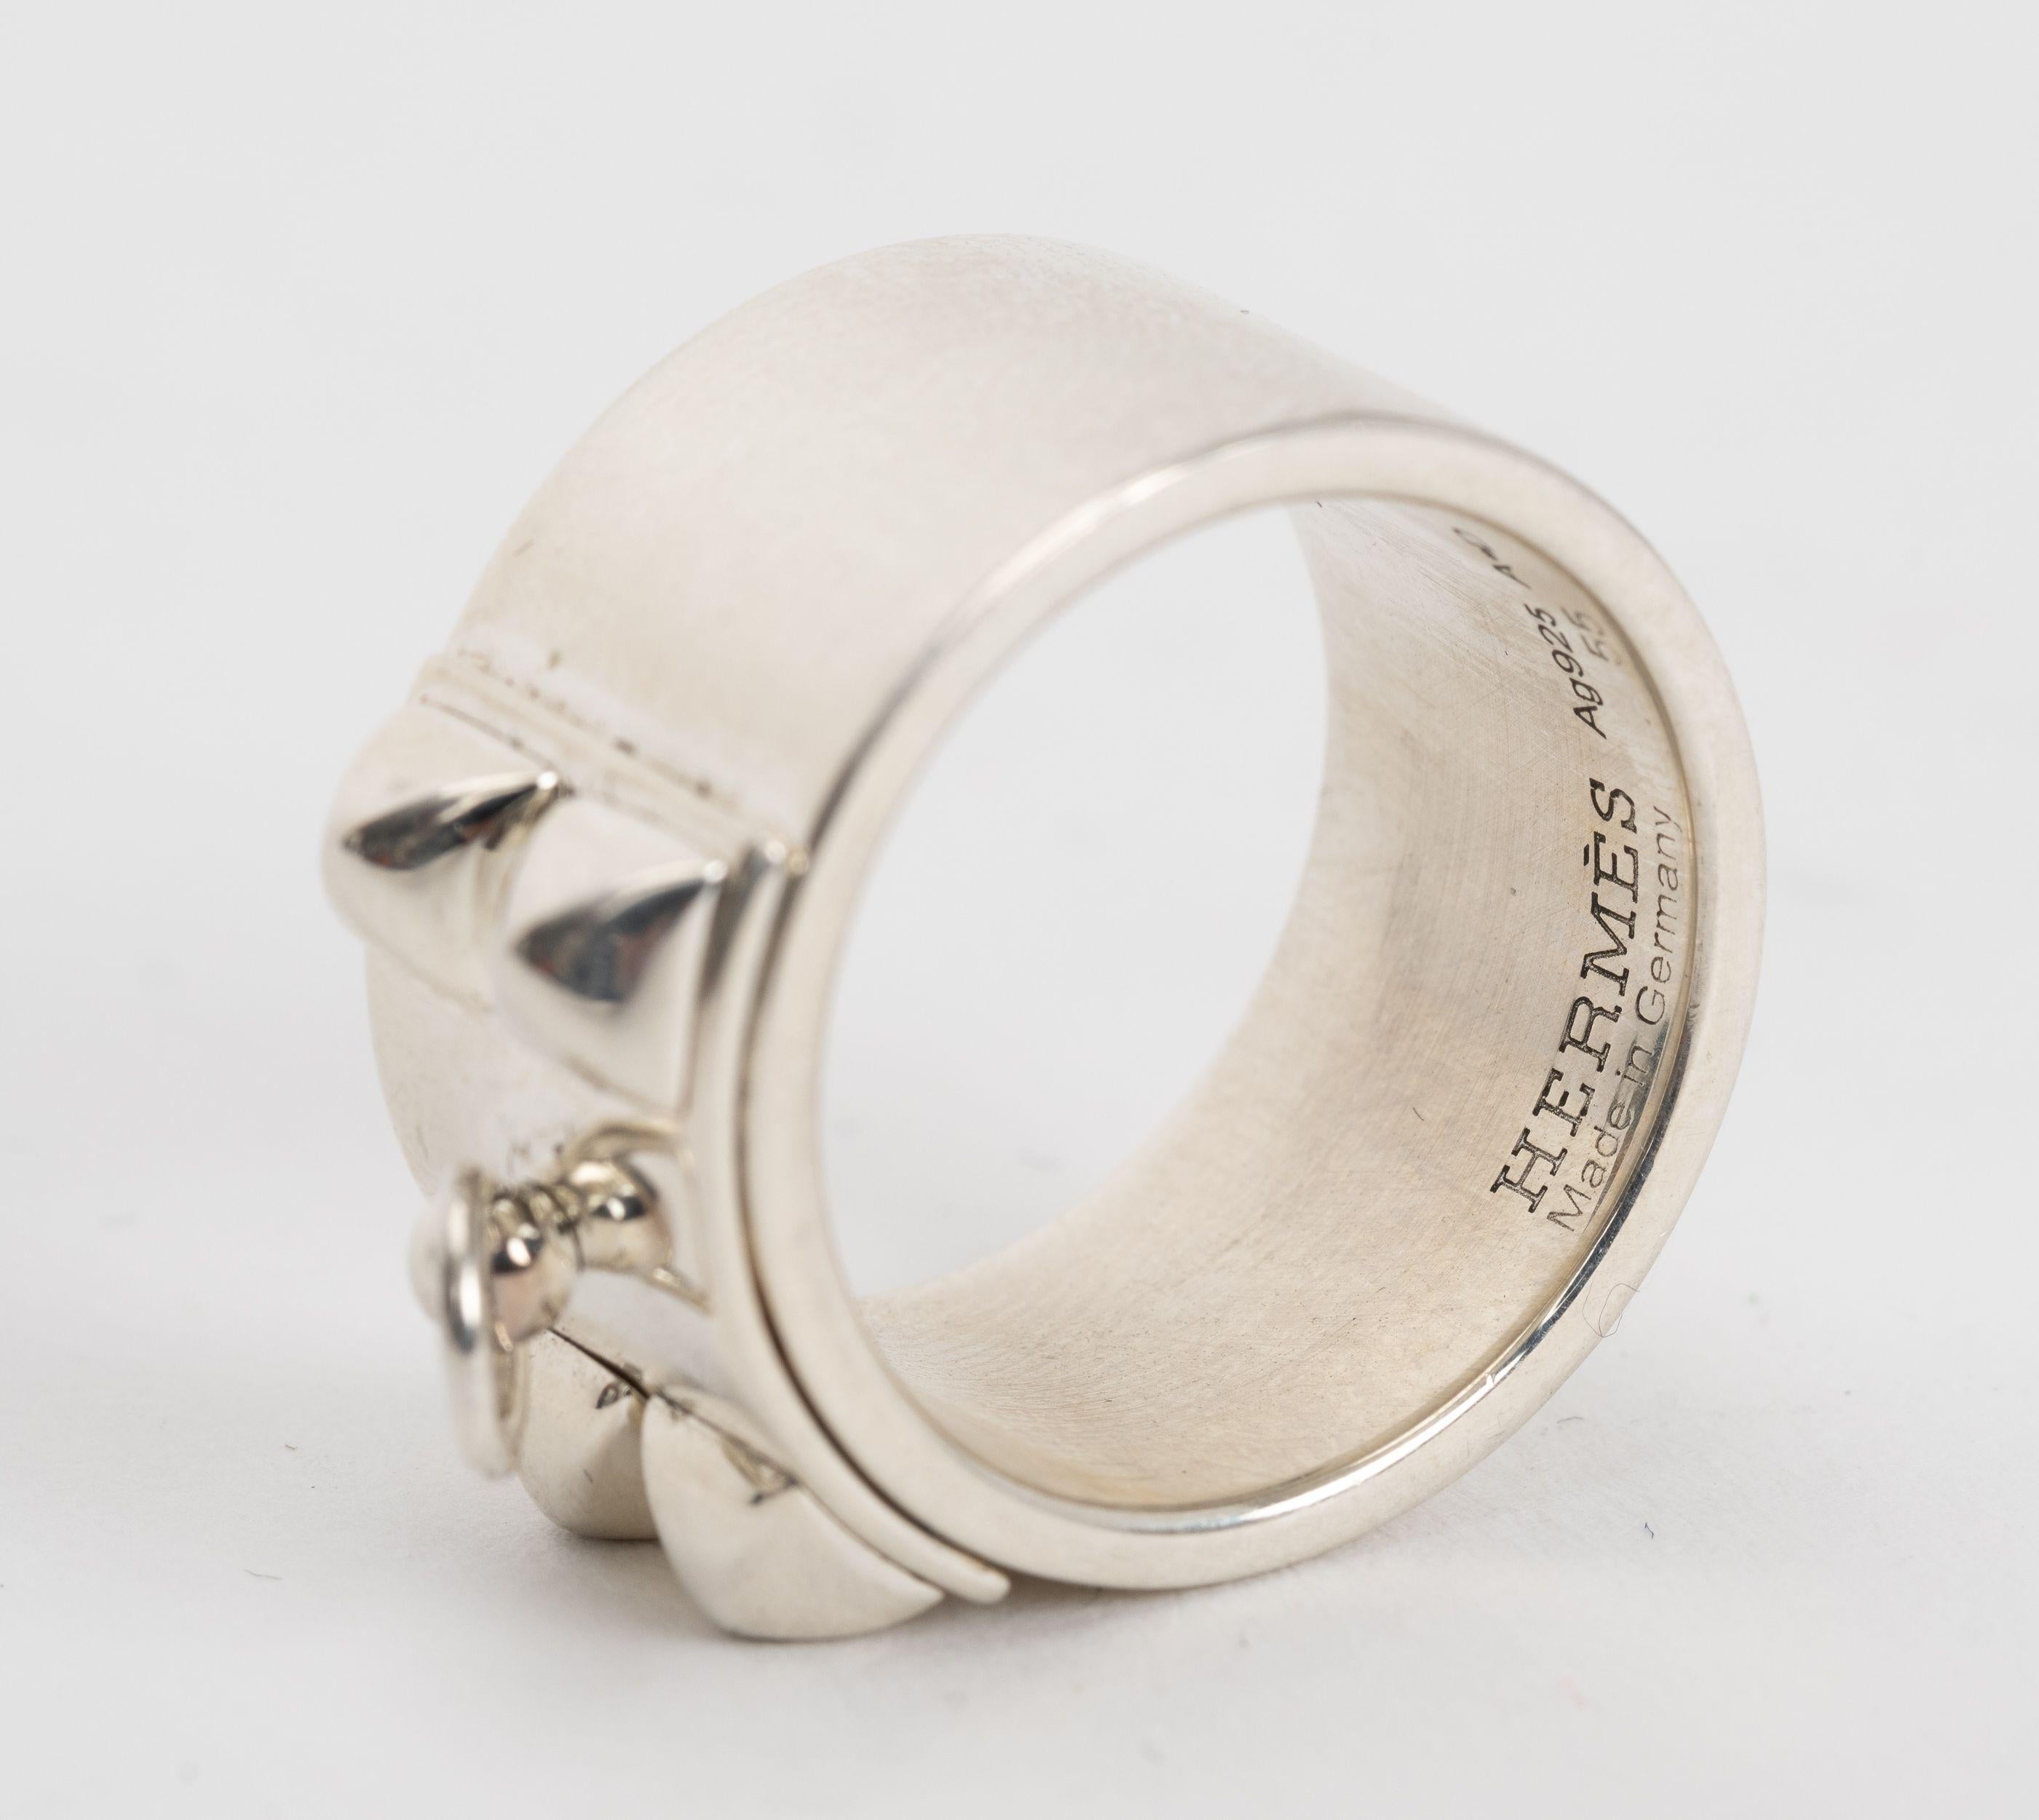 Hermes Sterling Silber Collier De Chien Ring inspiriert durch den Collier de Chien Gürtel. Größe 6,5. Kommt mit Original-Etui.